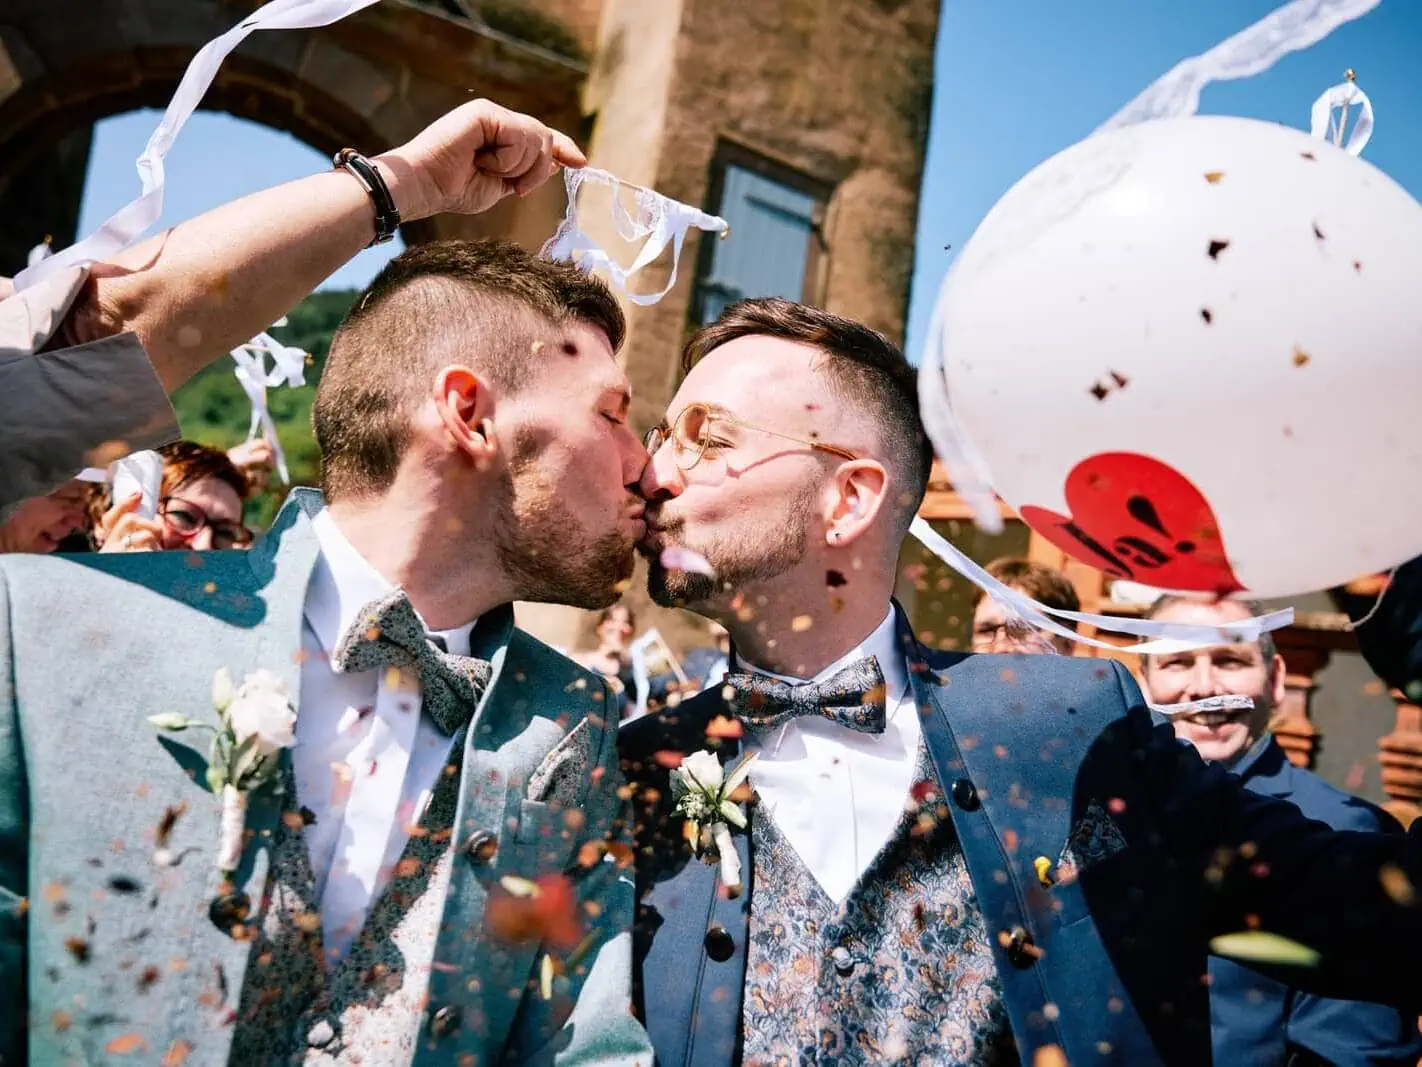 Unter einem Regen aus Konfetti schreiten die Bräutigame aus der Trauungszeremonie, ein Kuss vereint sie. Umgeben von Hochzeitsgästen.